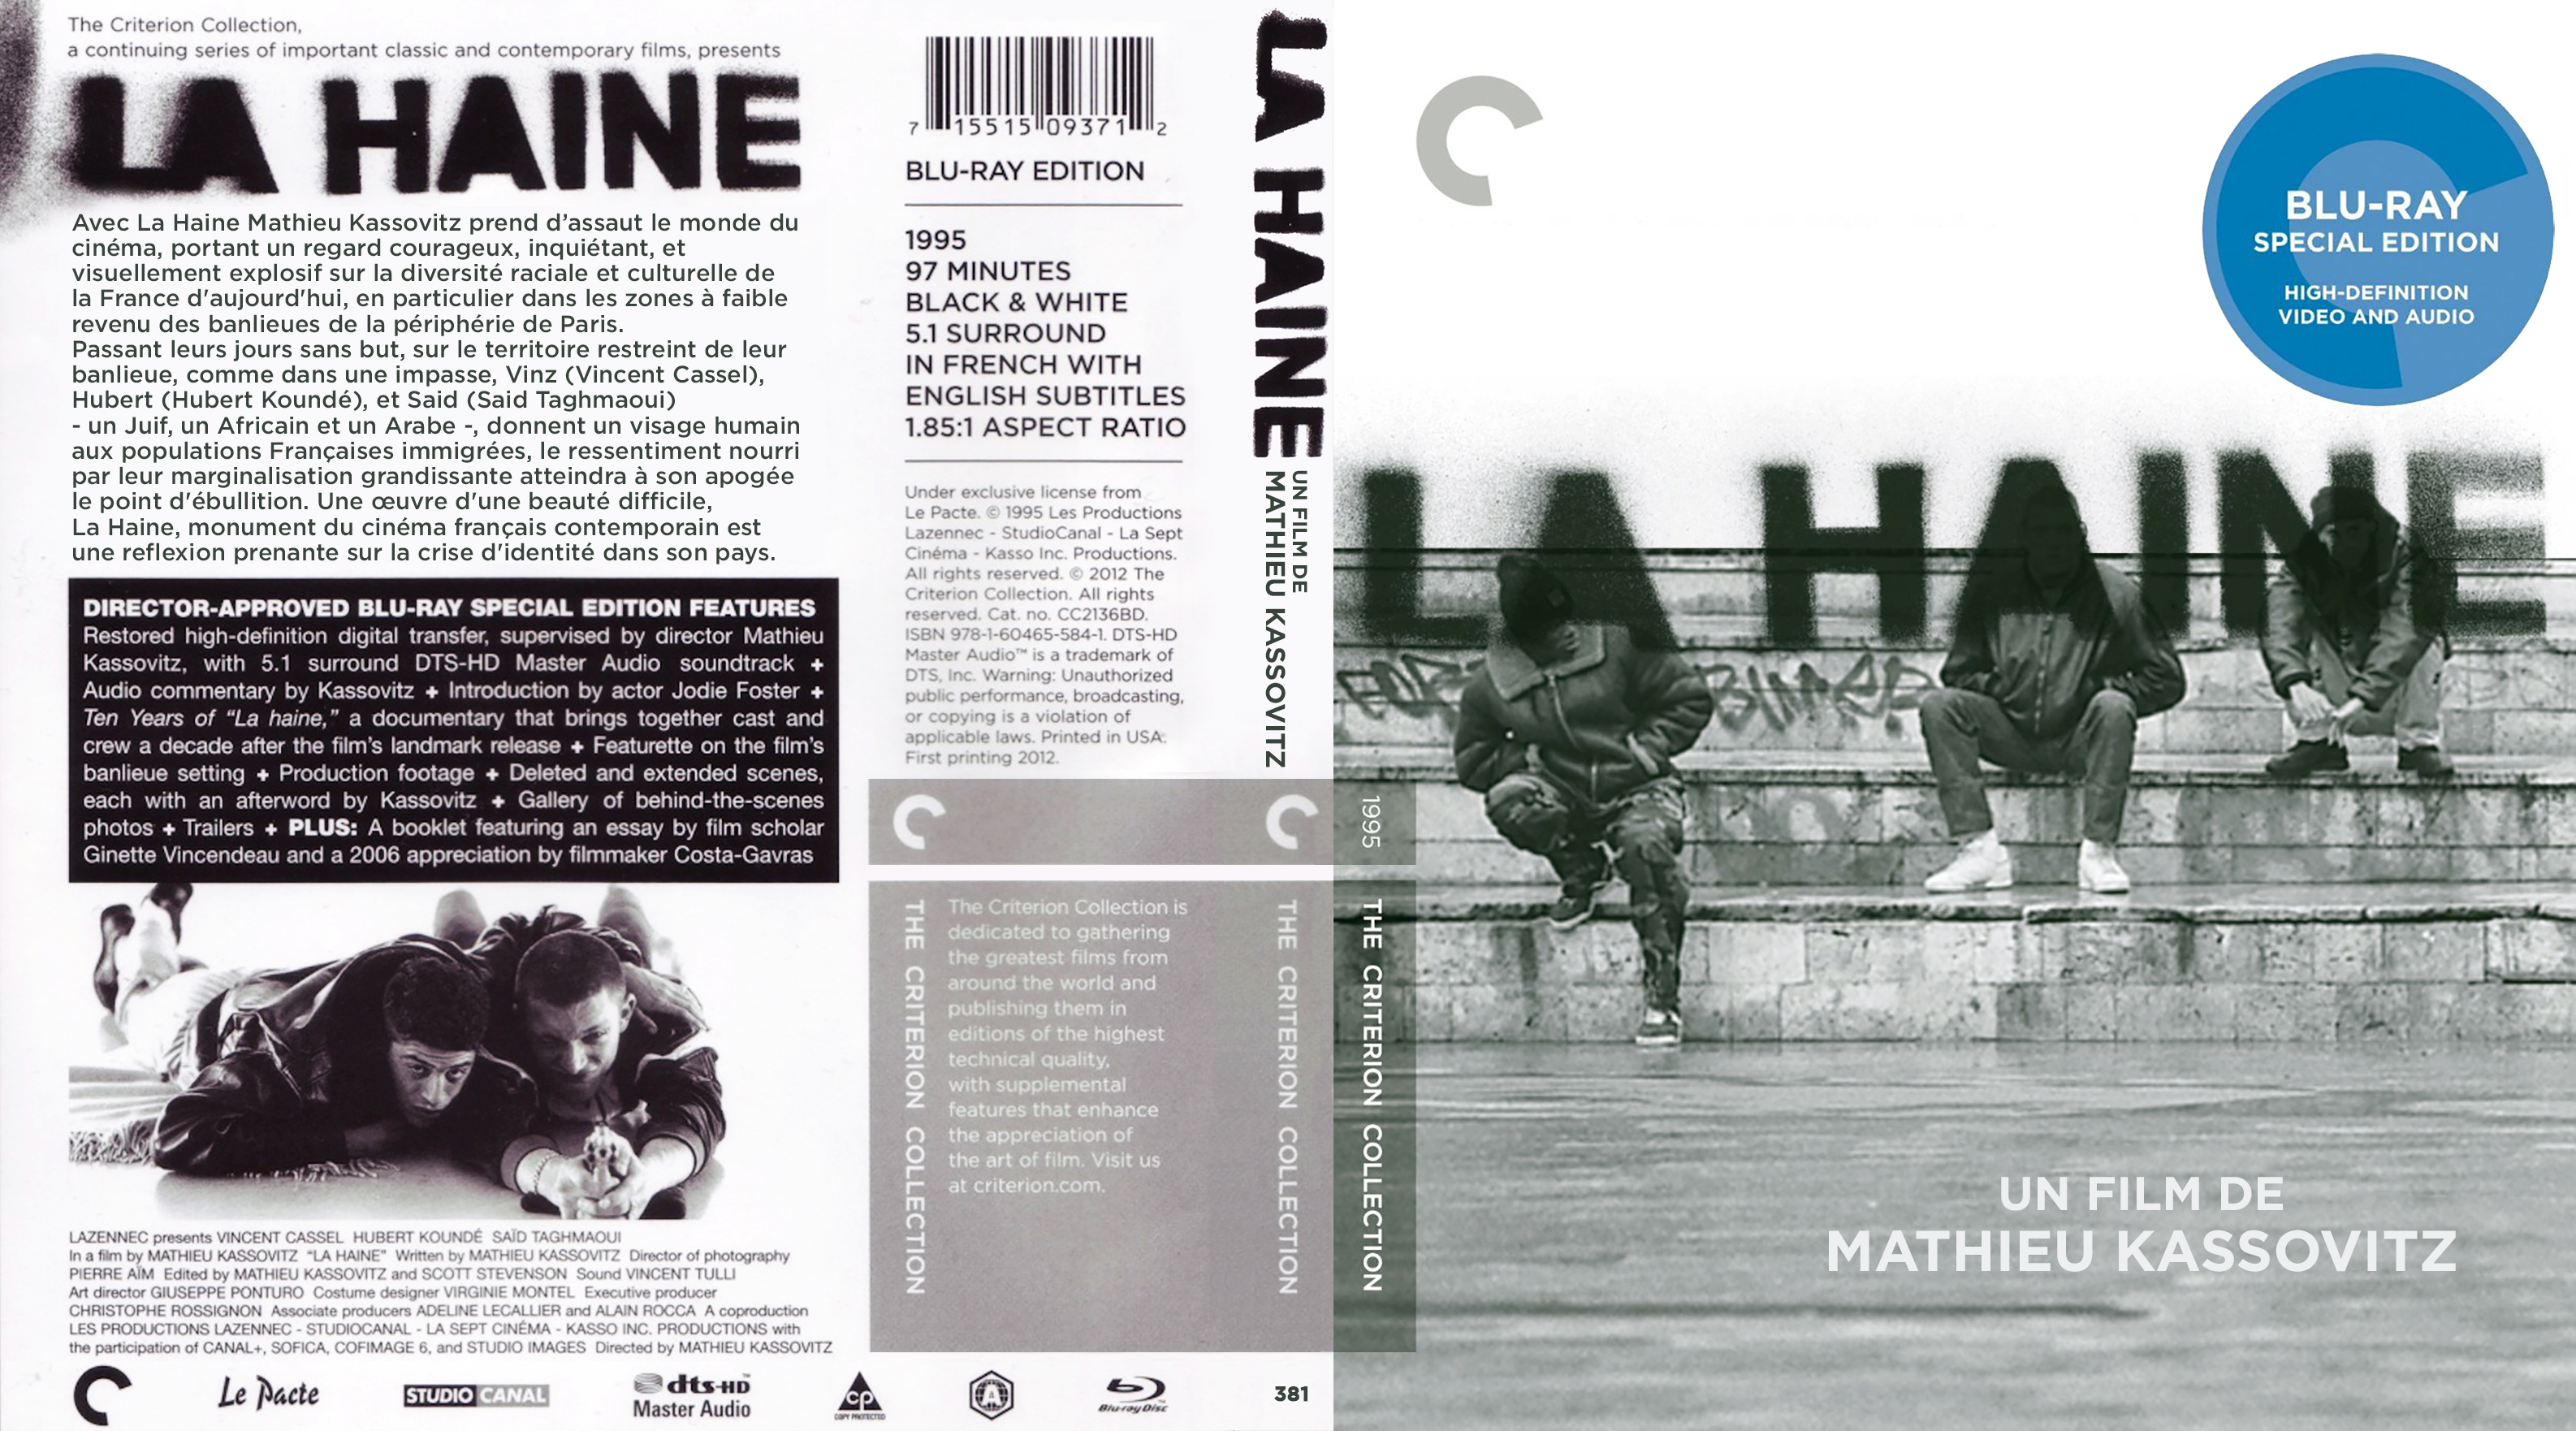 Jaquette DVD La haine (BLU-RAY) v2